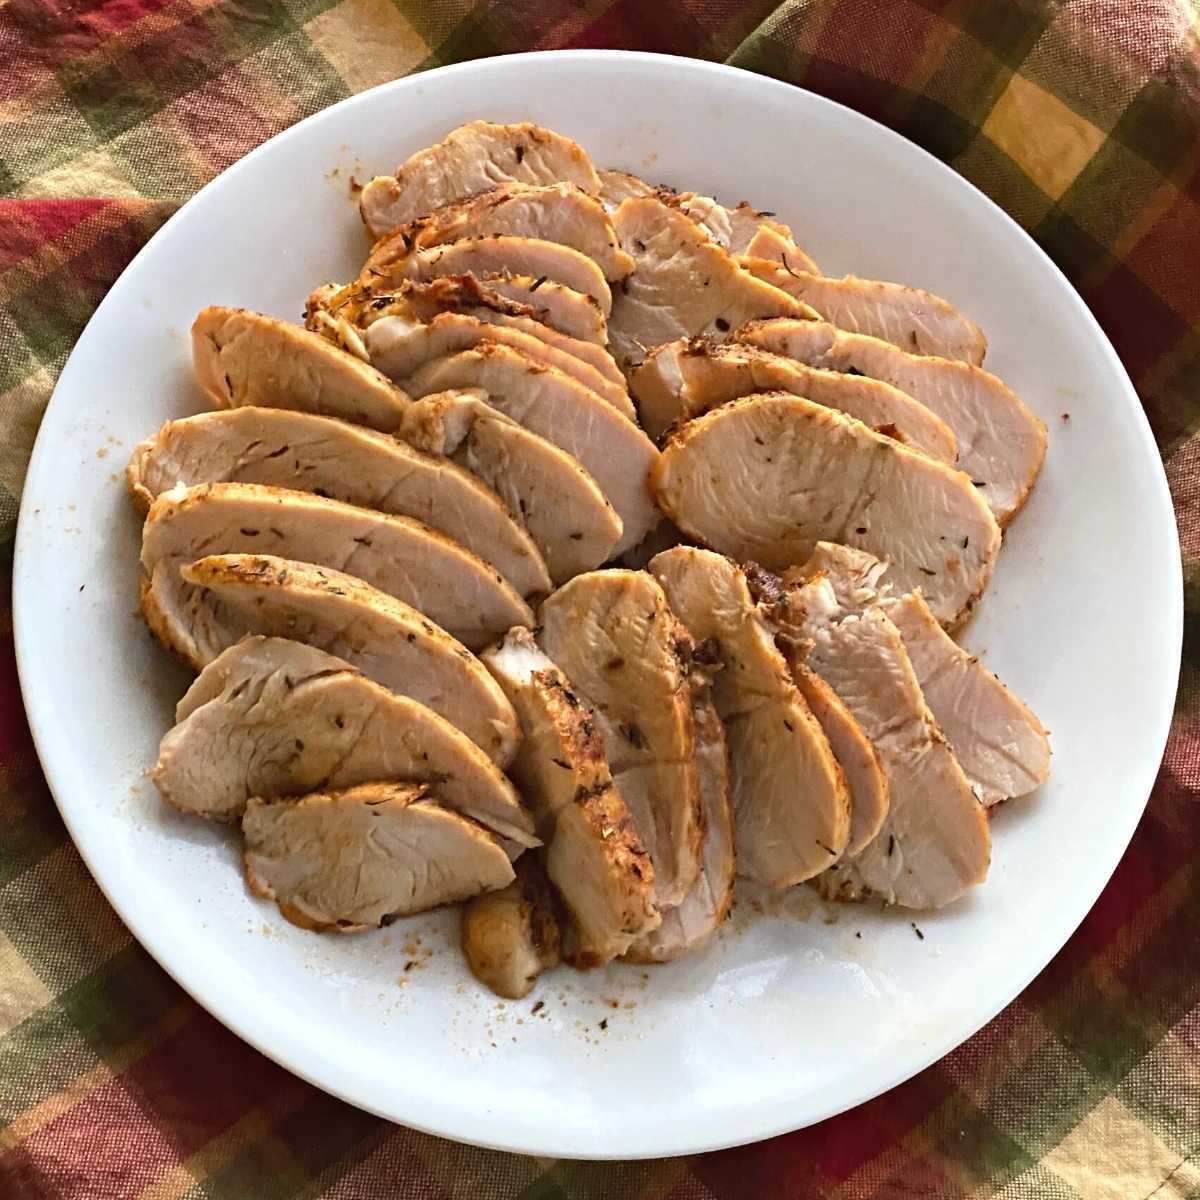 Sliced turkey breast tenderloin on a plate.